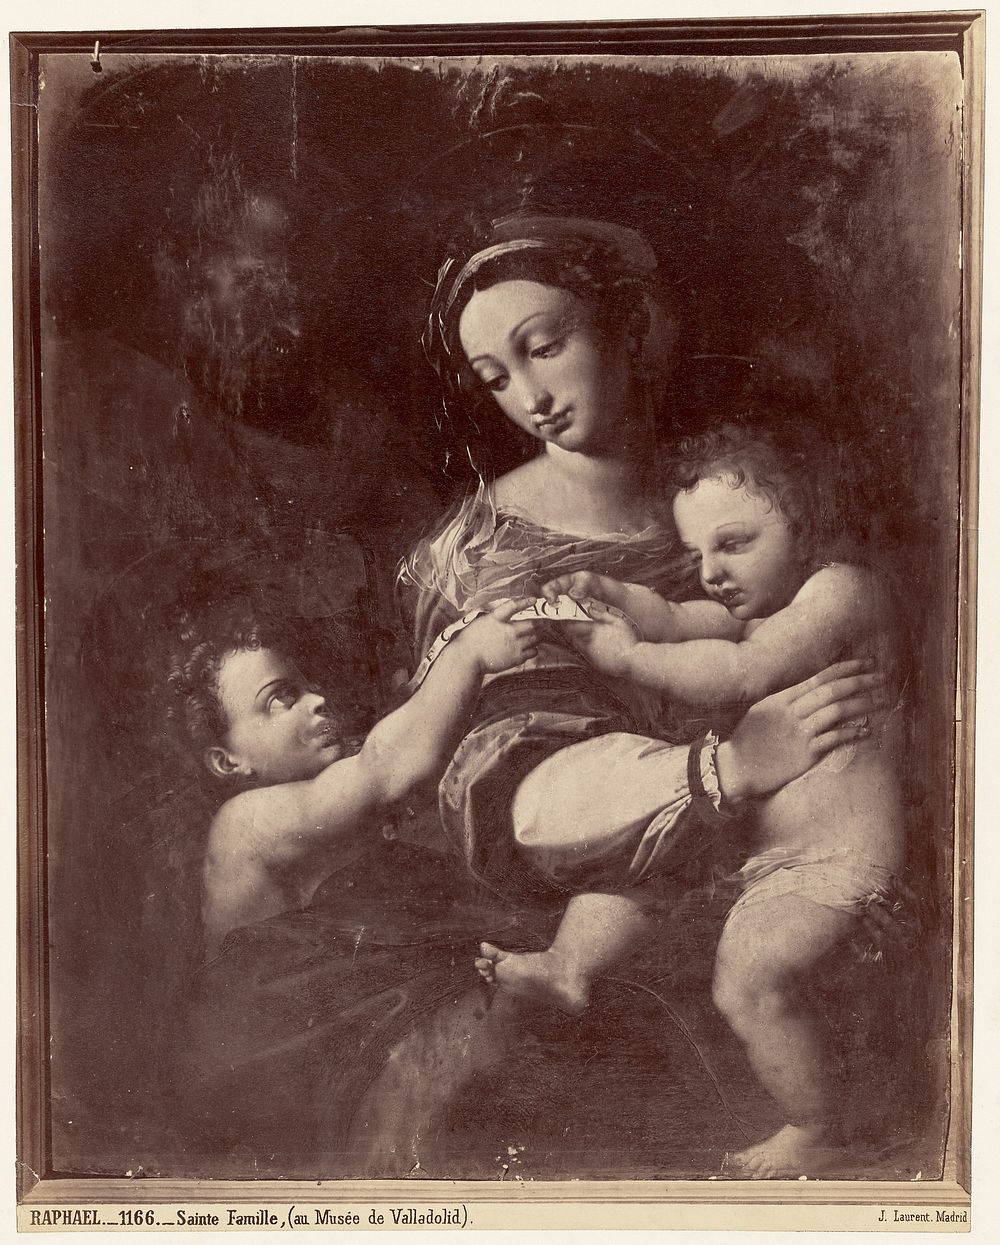 Raphael, Sainte Famille, au Musee de Valladolid by Juan Laurent